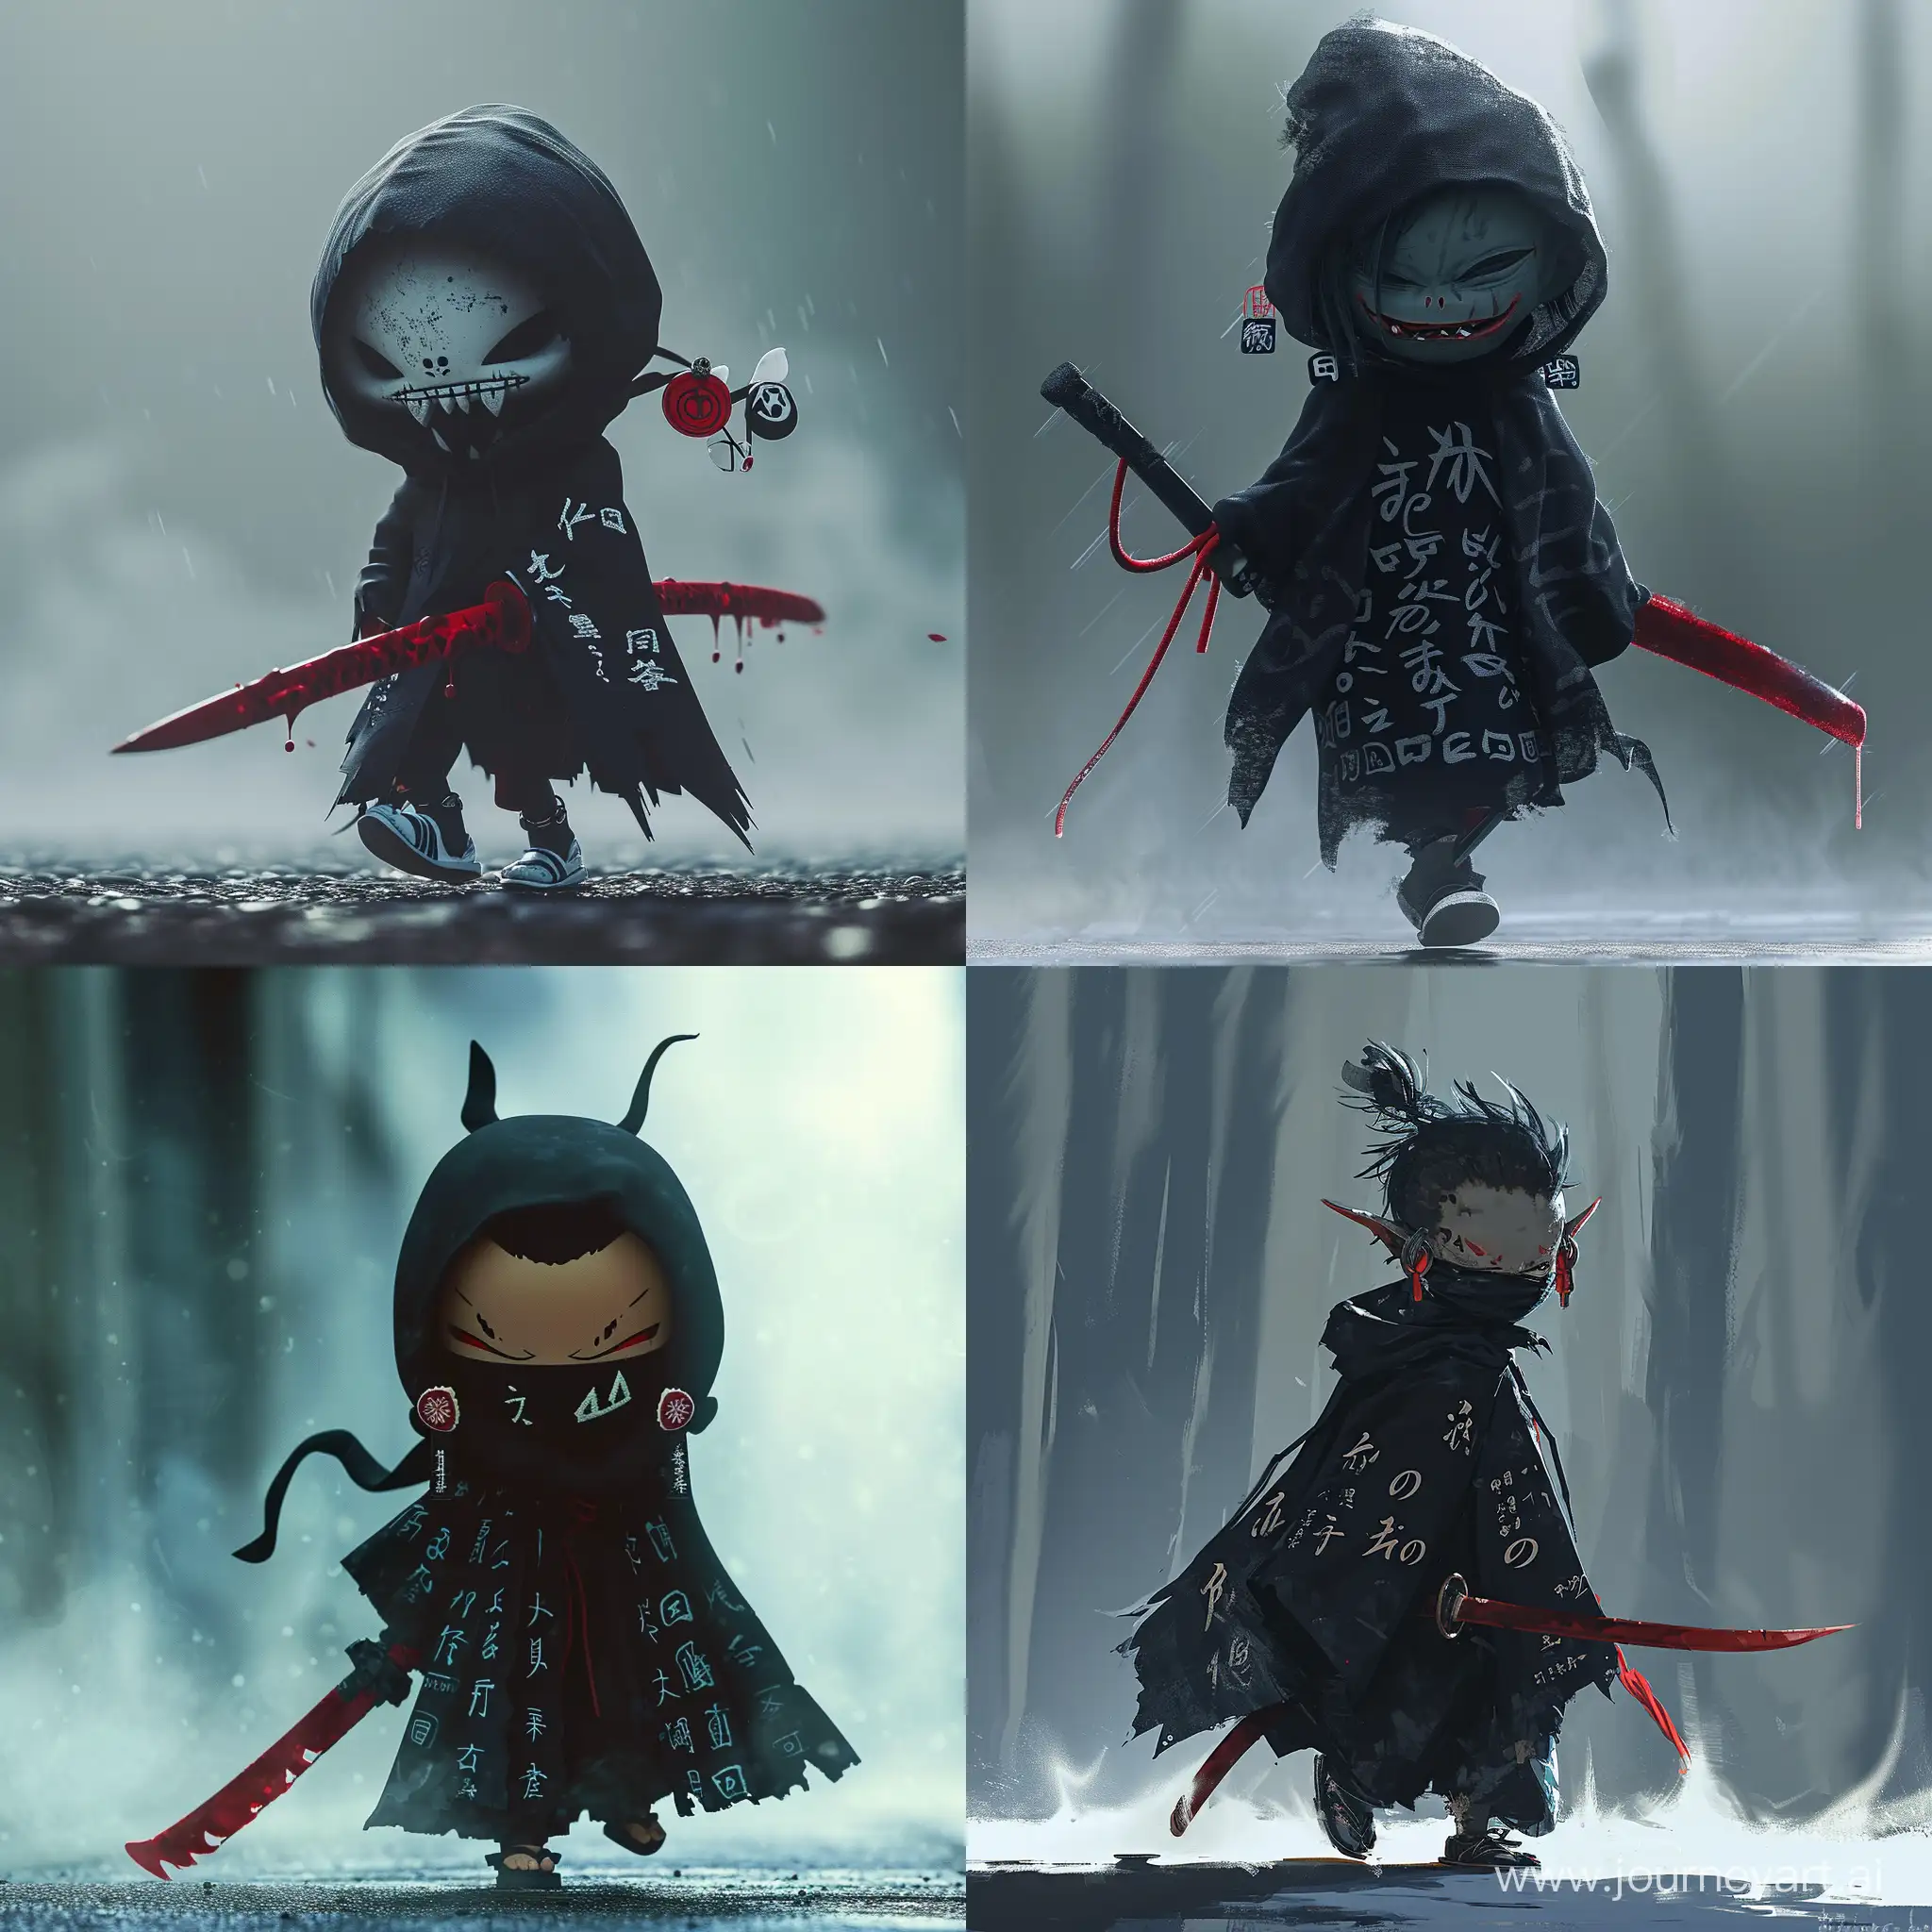 Маленький демон, ходящий под завесой тумана, держа в руках темно красный мечь, черный плащь с японскими надписями, японские серьги на ушах, с закрытым лицом и страшной улыбкой. Anime style